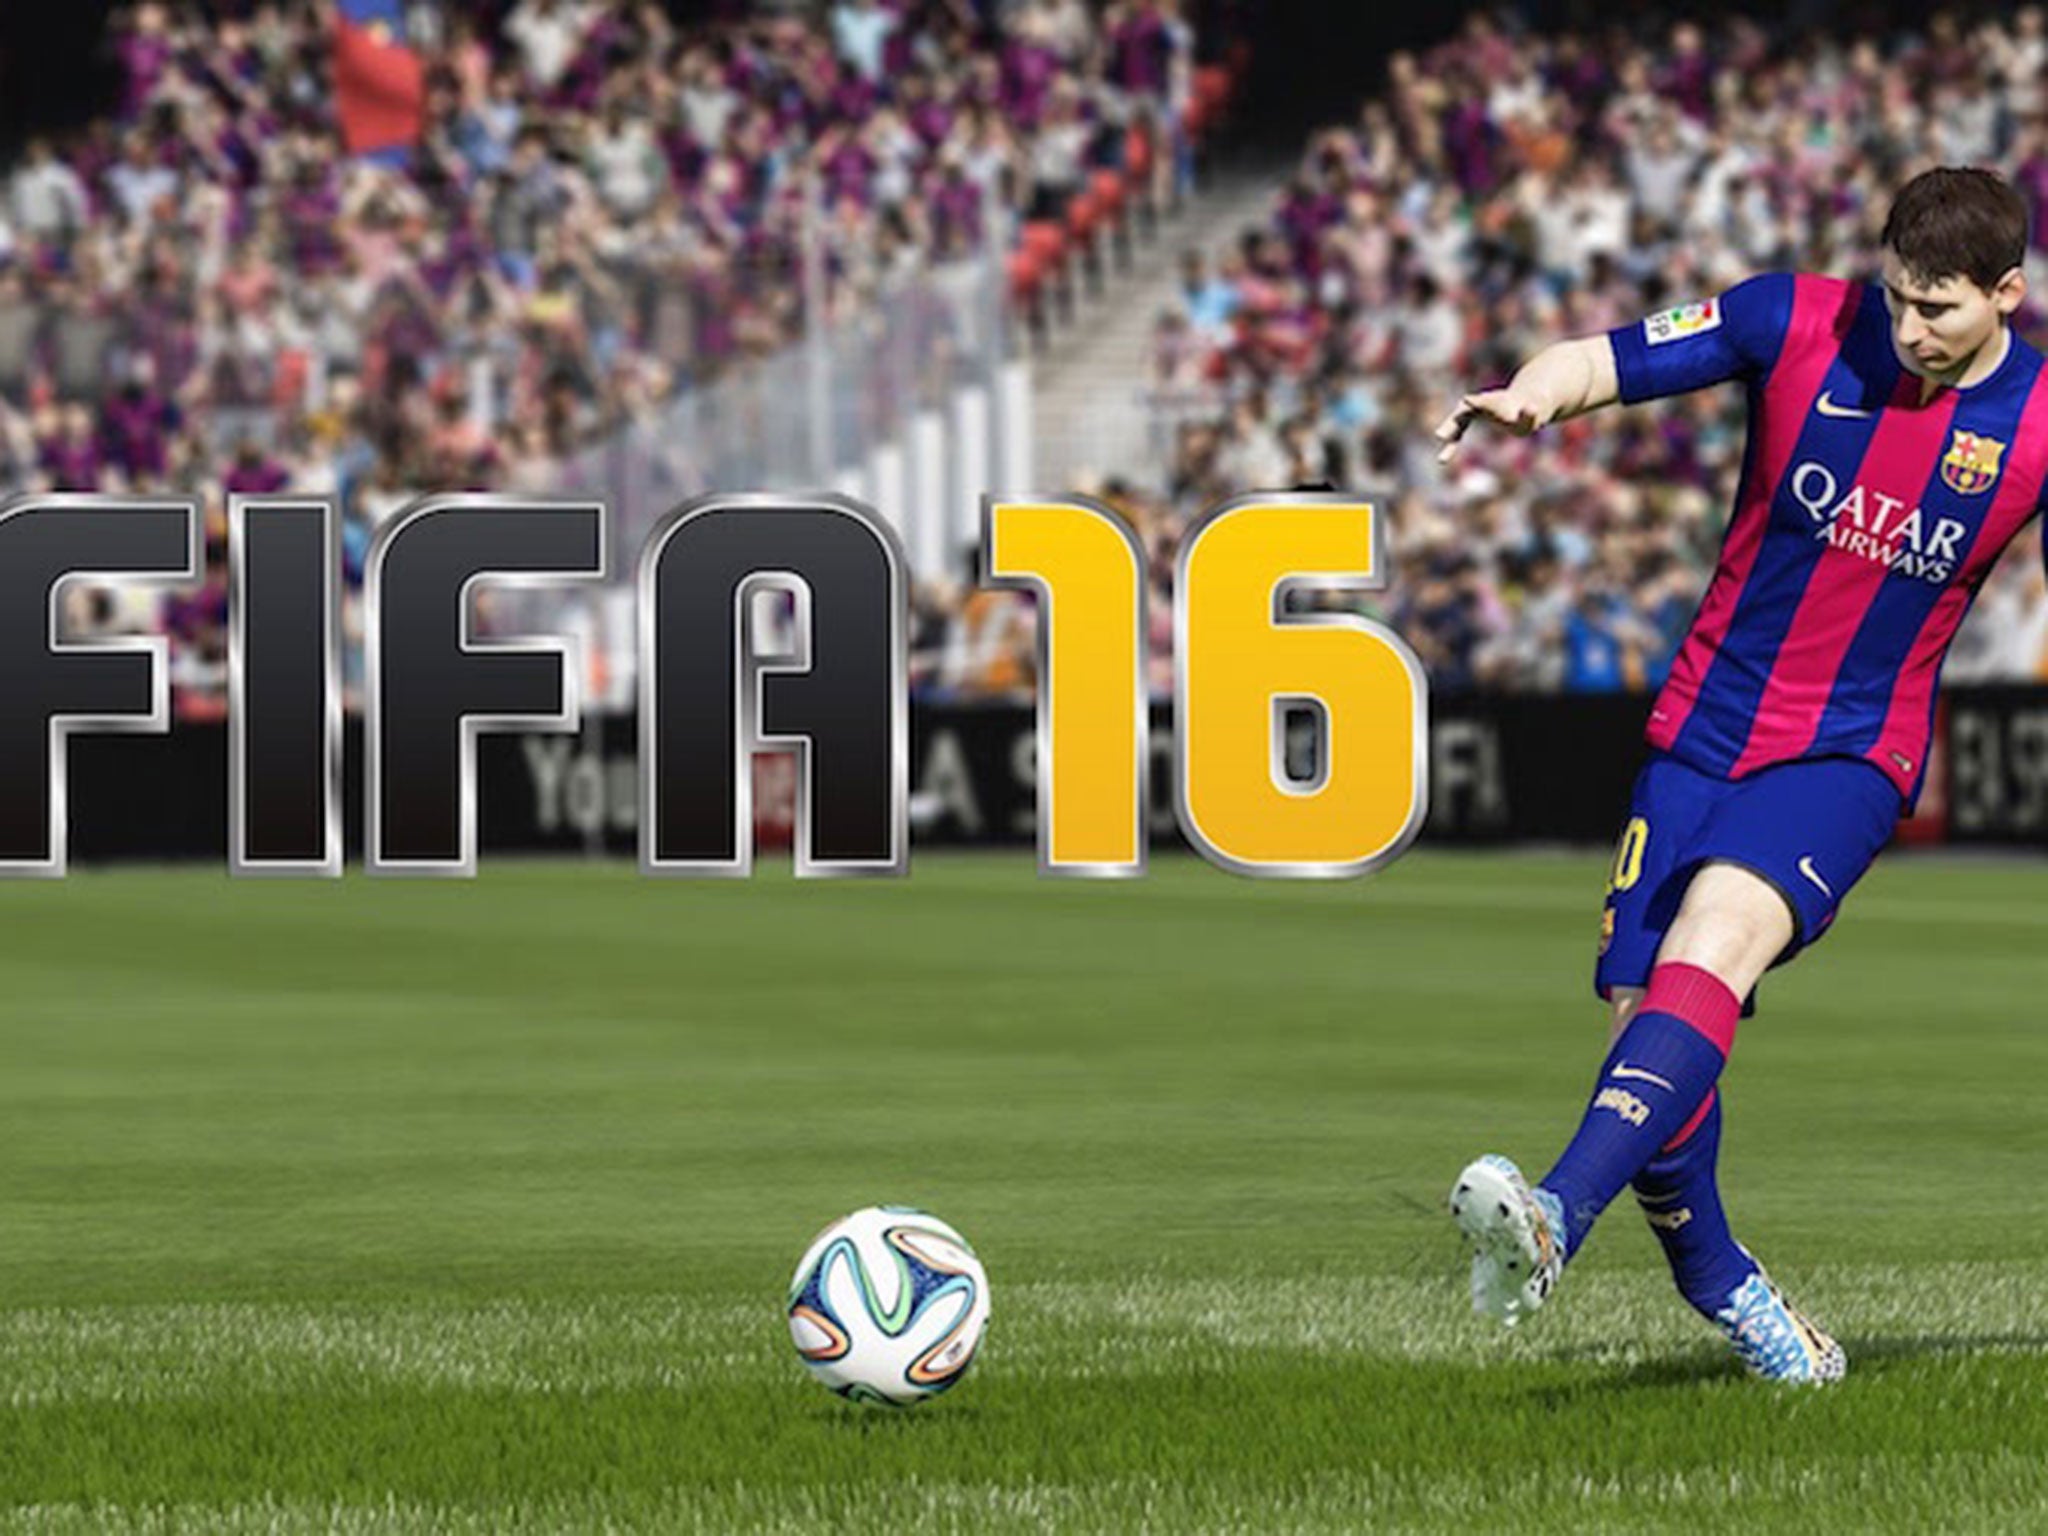 Demo do FIFA 16